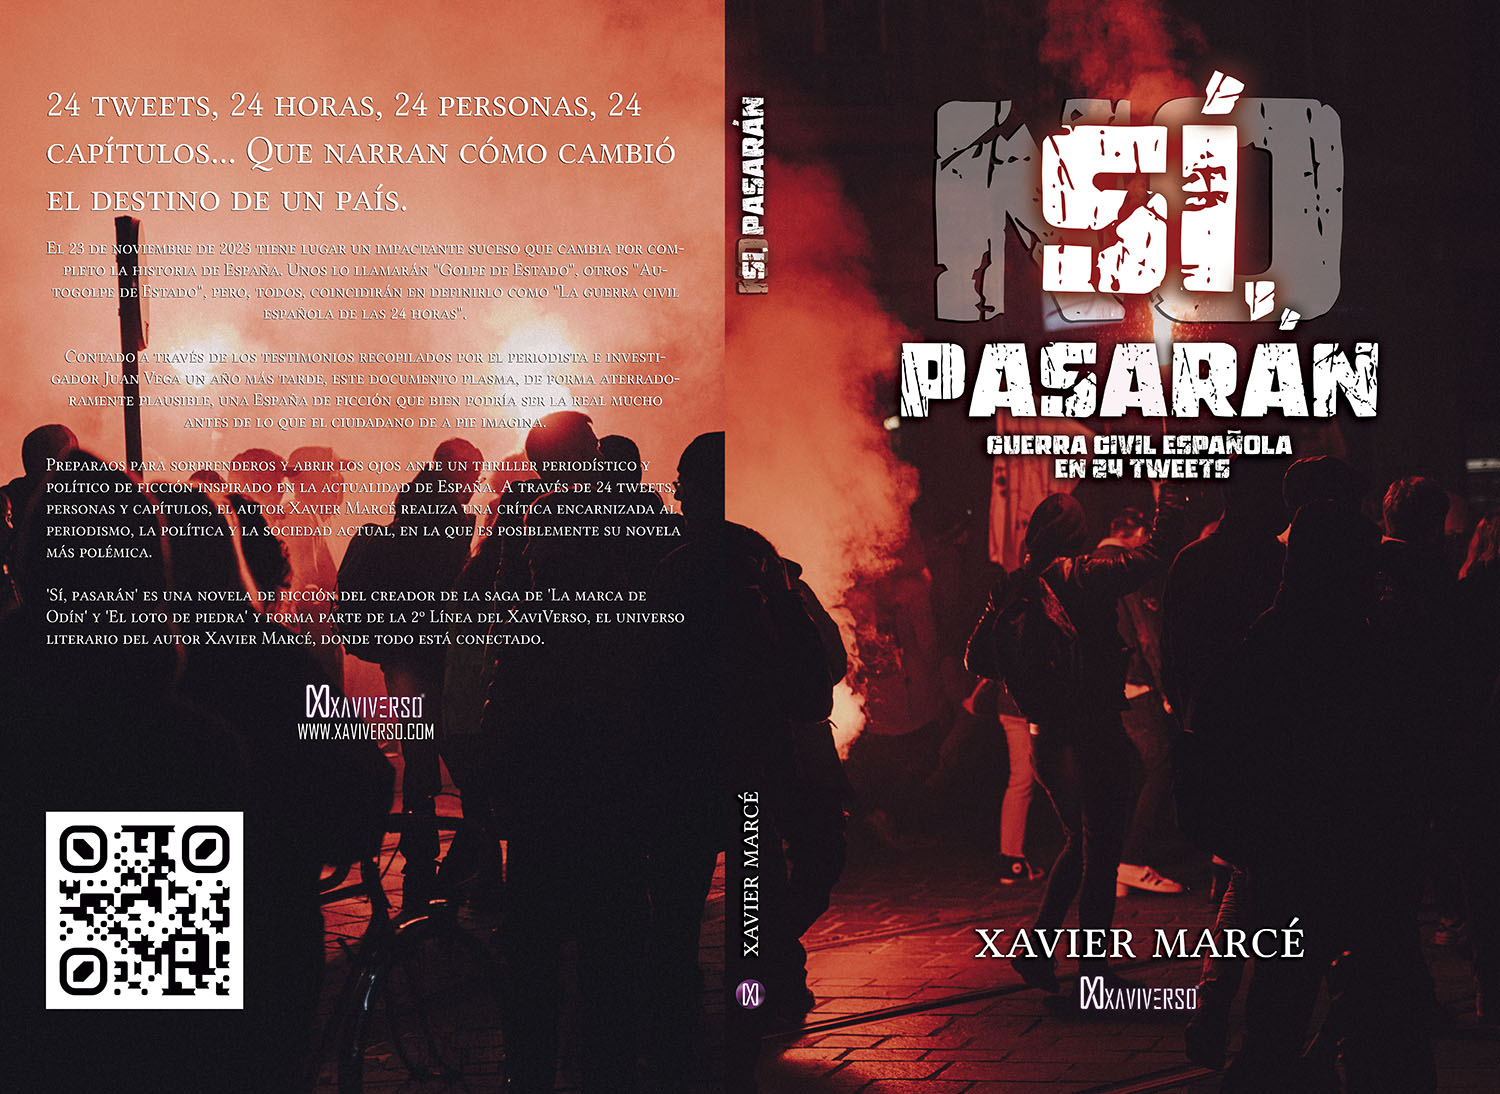 Diseño de cubierta de Sí, pasarán. Guerra Civil española en 24 tweets. Thriller de ficción que mezcla actualidad con política y periodismo.